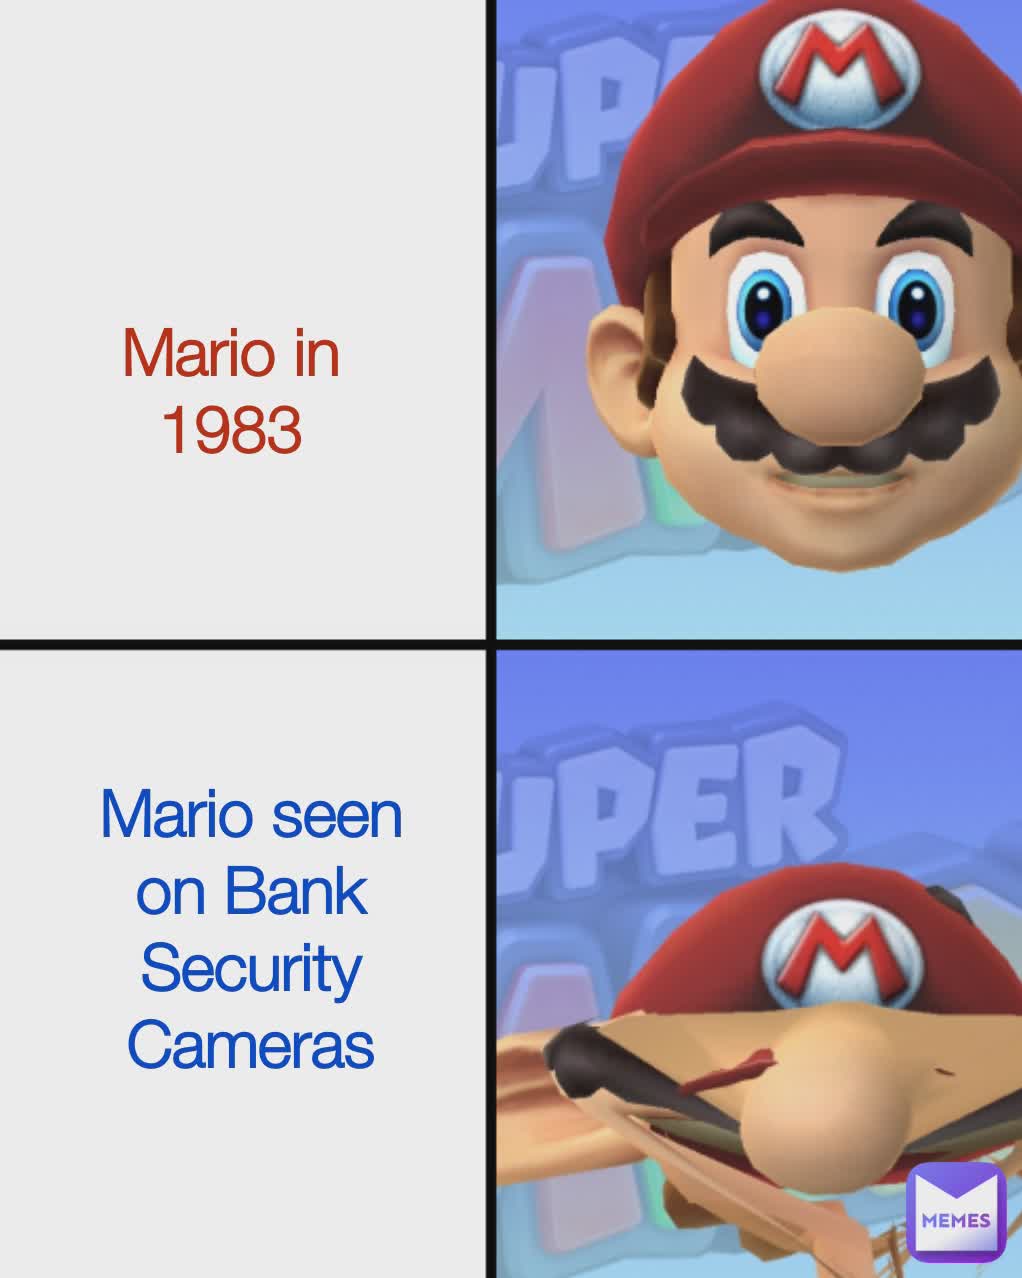 Mario in 1983 Mario seen in Bank Security Cameras Mario In 1983 Mario in 1983 Mario seen on Bank Security Cameras